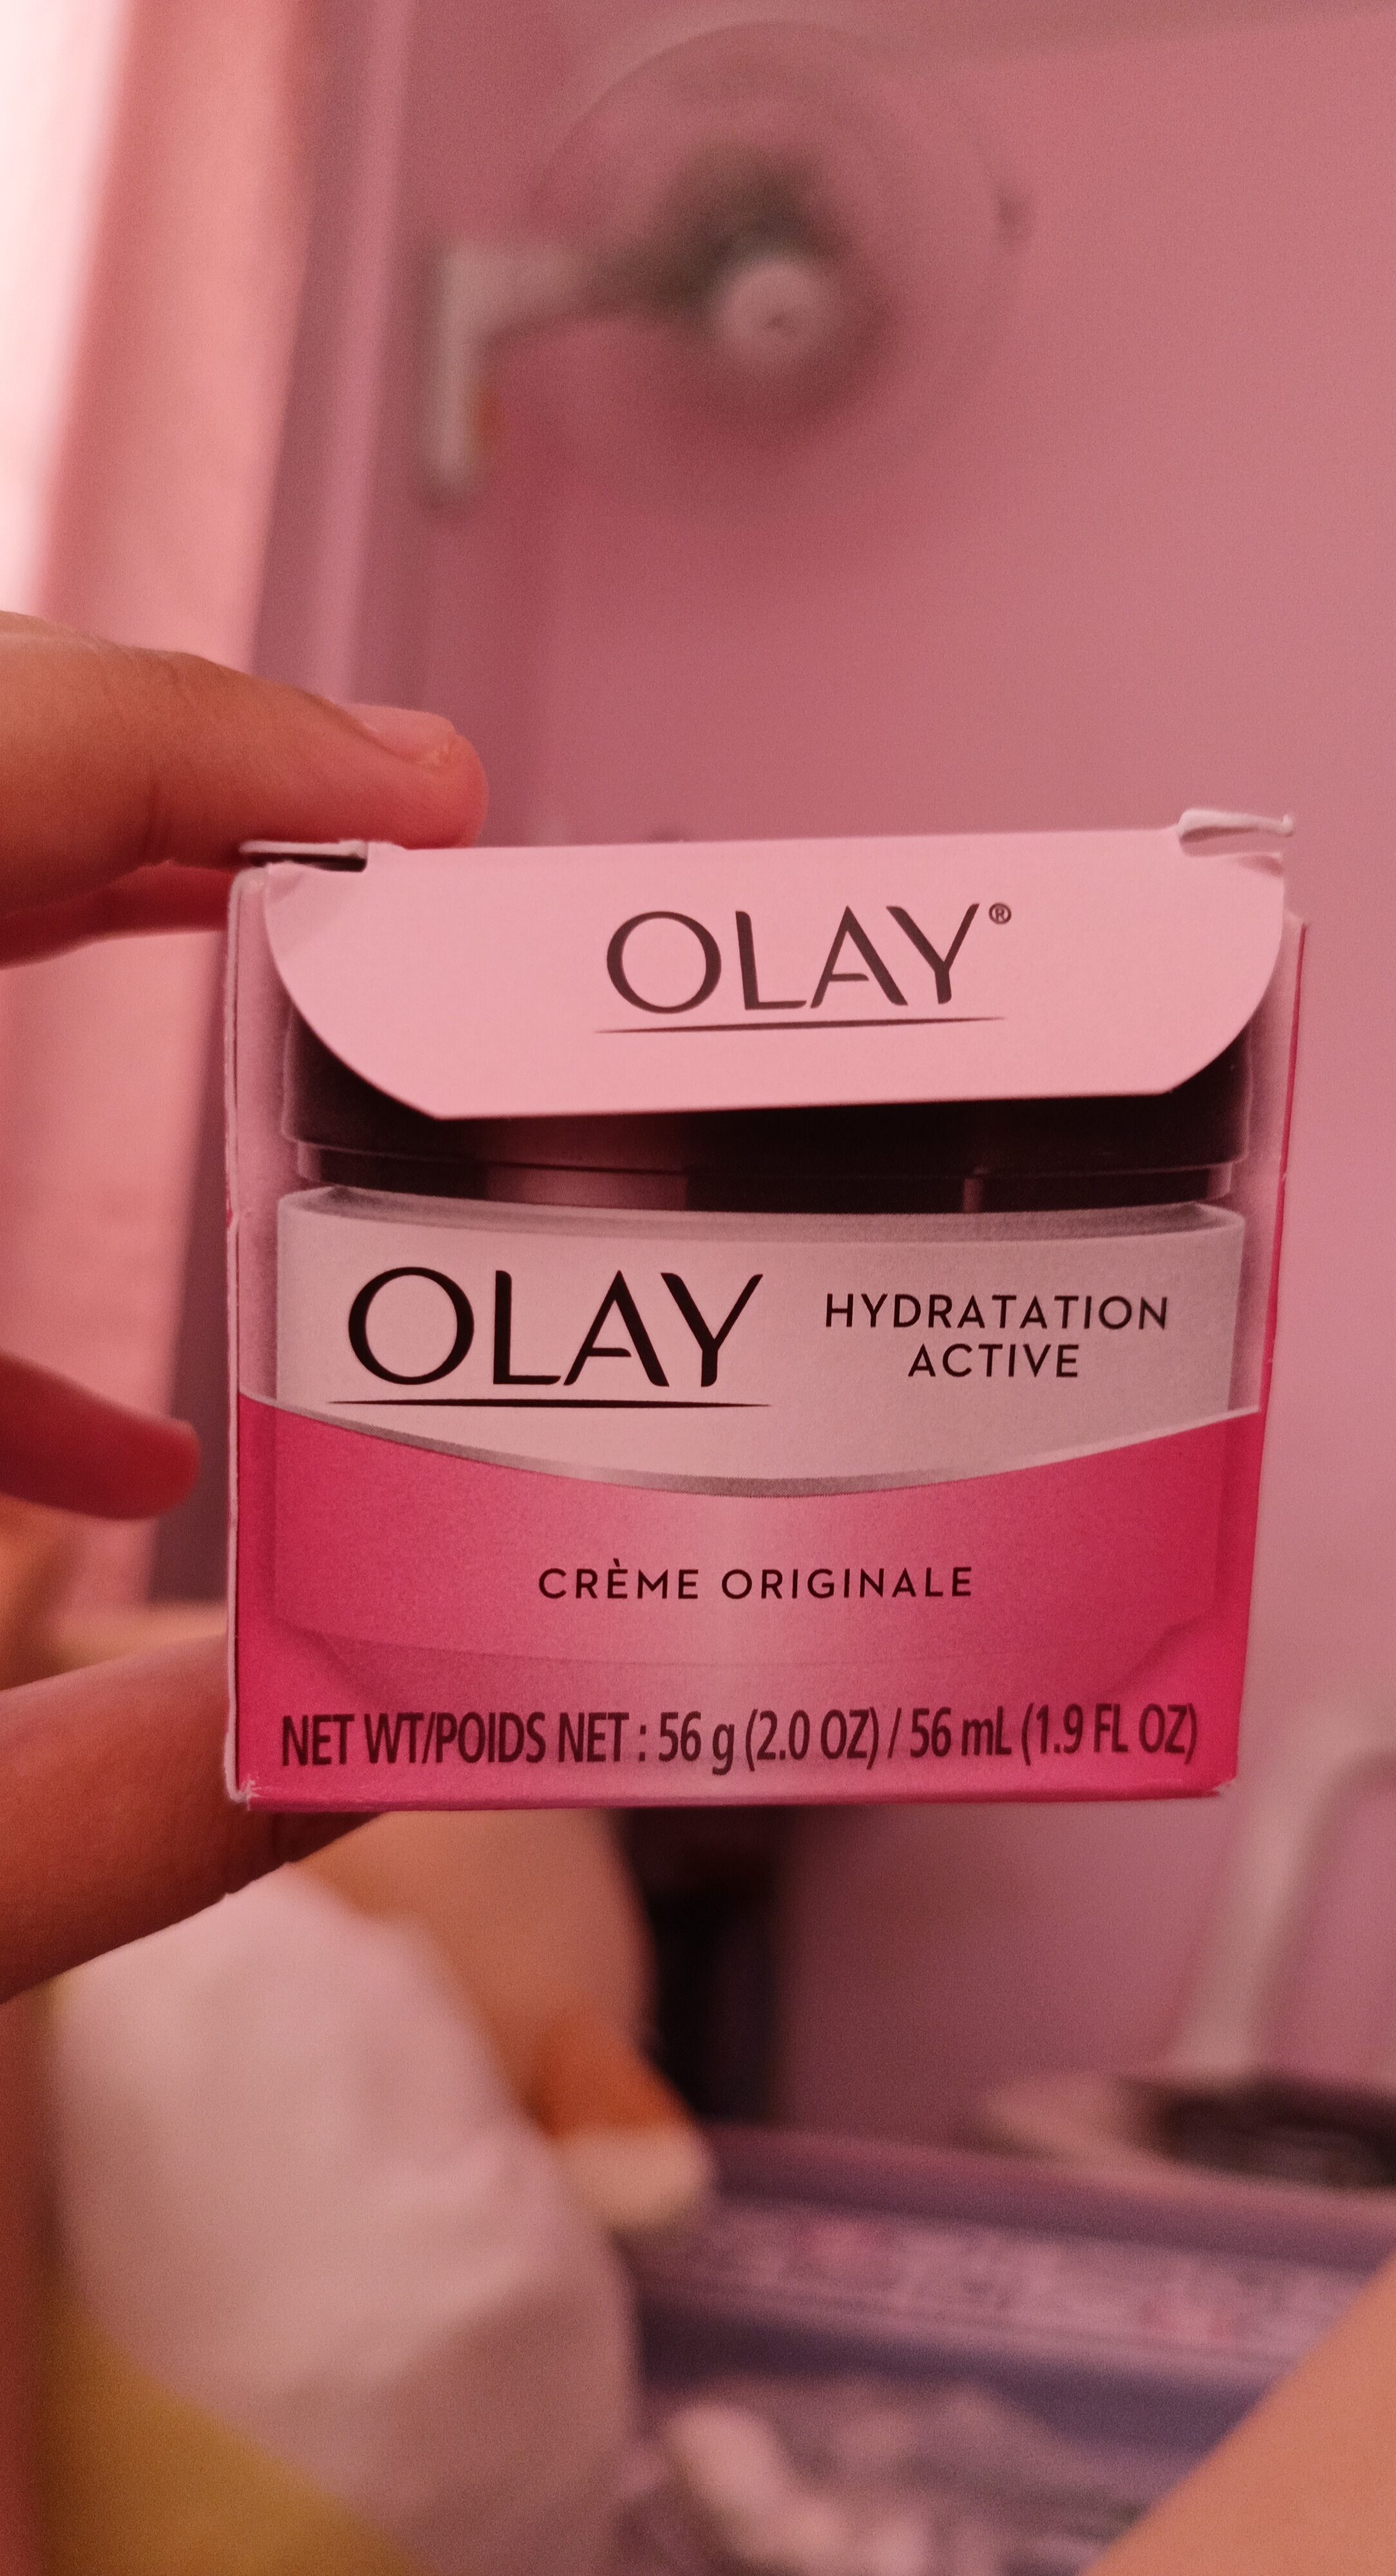 Olay - Product - en